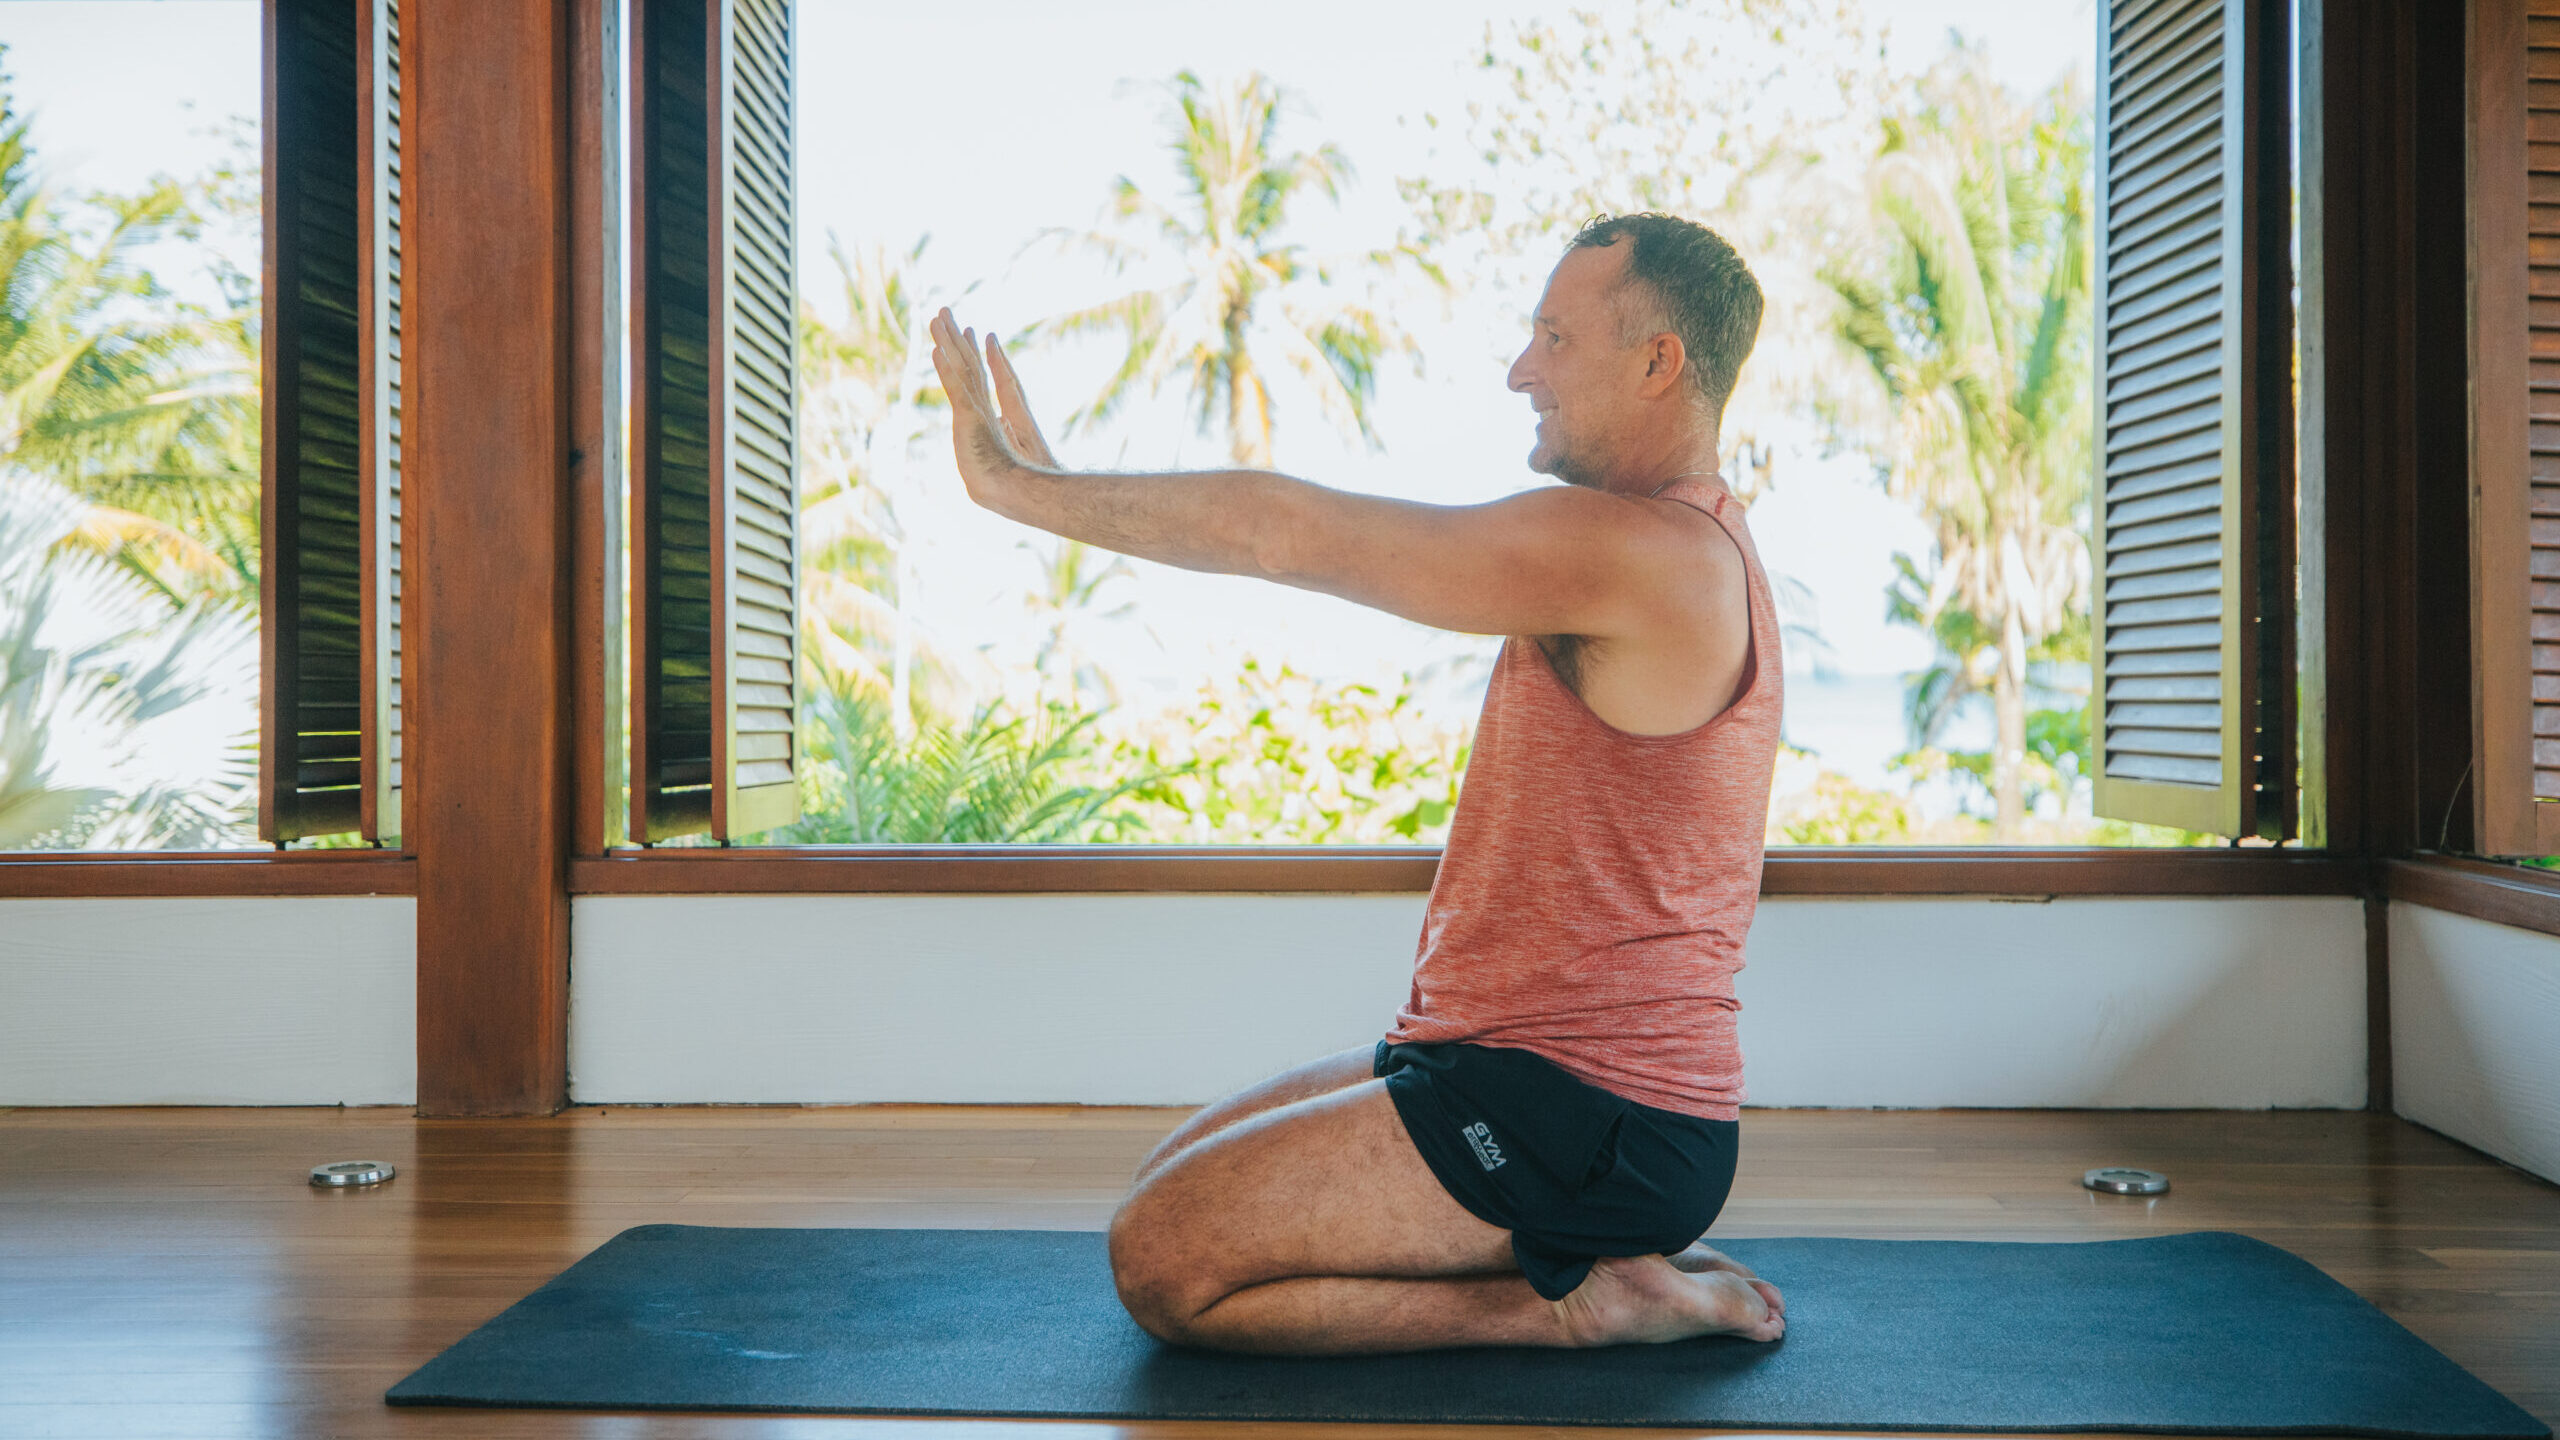 Club Yoga - Stick Yoga Stretch your mind and body, enhanced